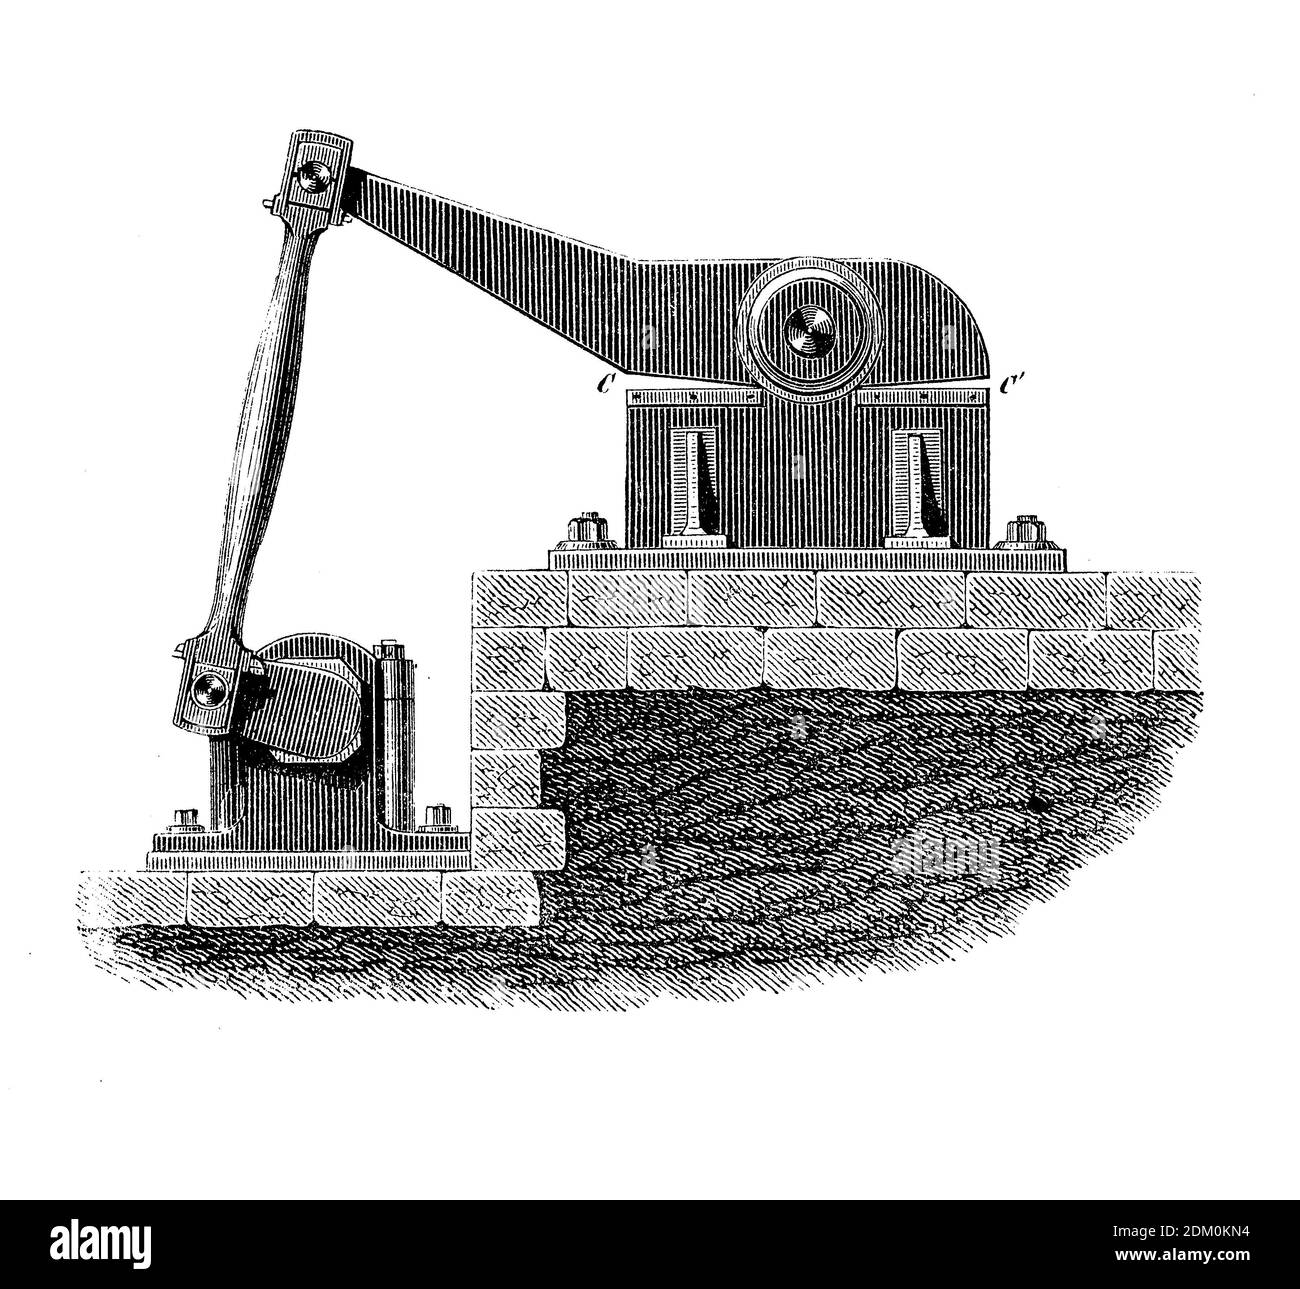 Máquinas industriales: Cizalla de cocodrilo o cizalla de palanca, cizalla de corte de metal con una mandíbula articulada impulsada hidráulicamente, grabado del siglo 19 Foto de stock